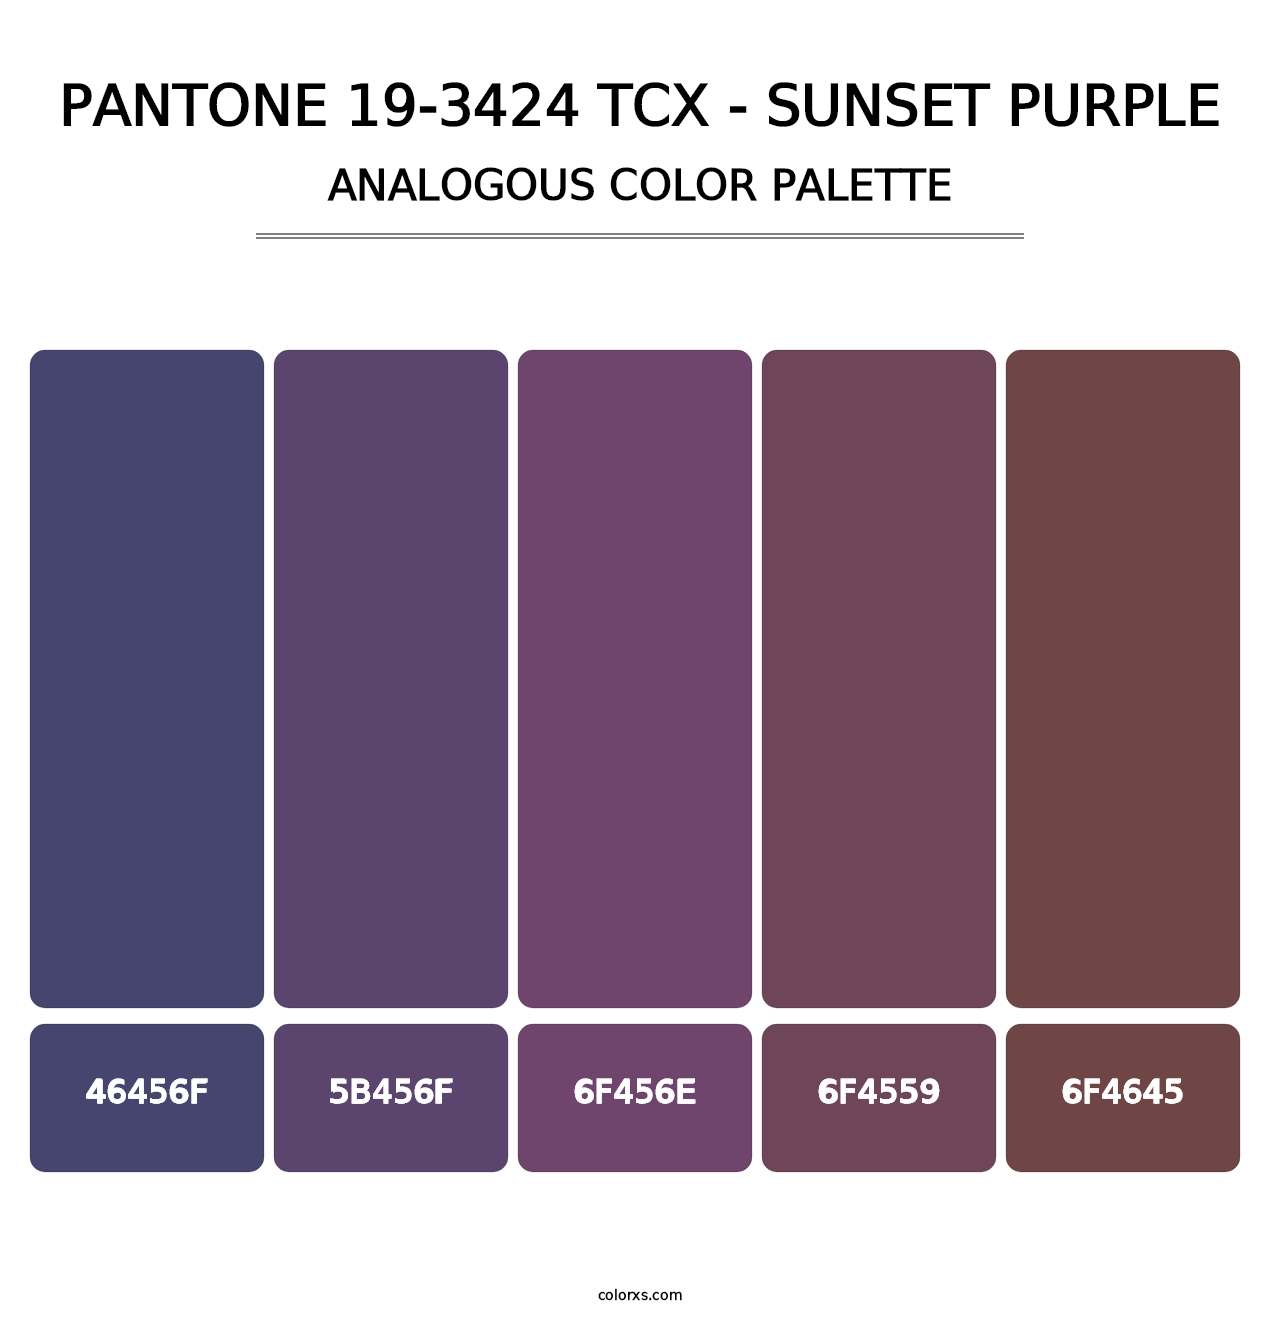 PANTONE 19-3424 TCX - Sunset Purple - Analogous Color Palette